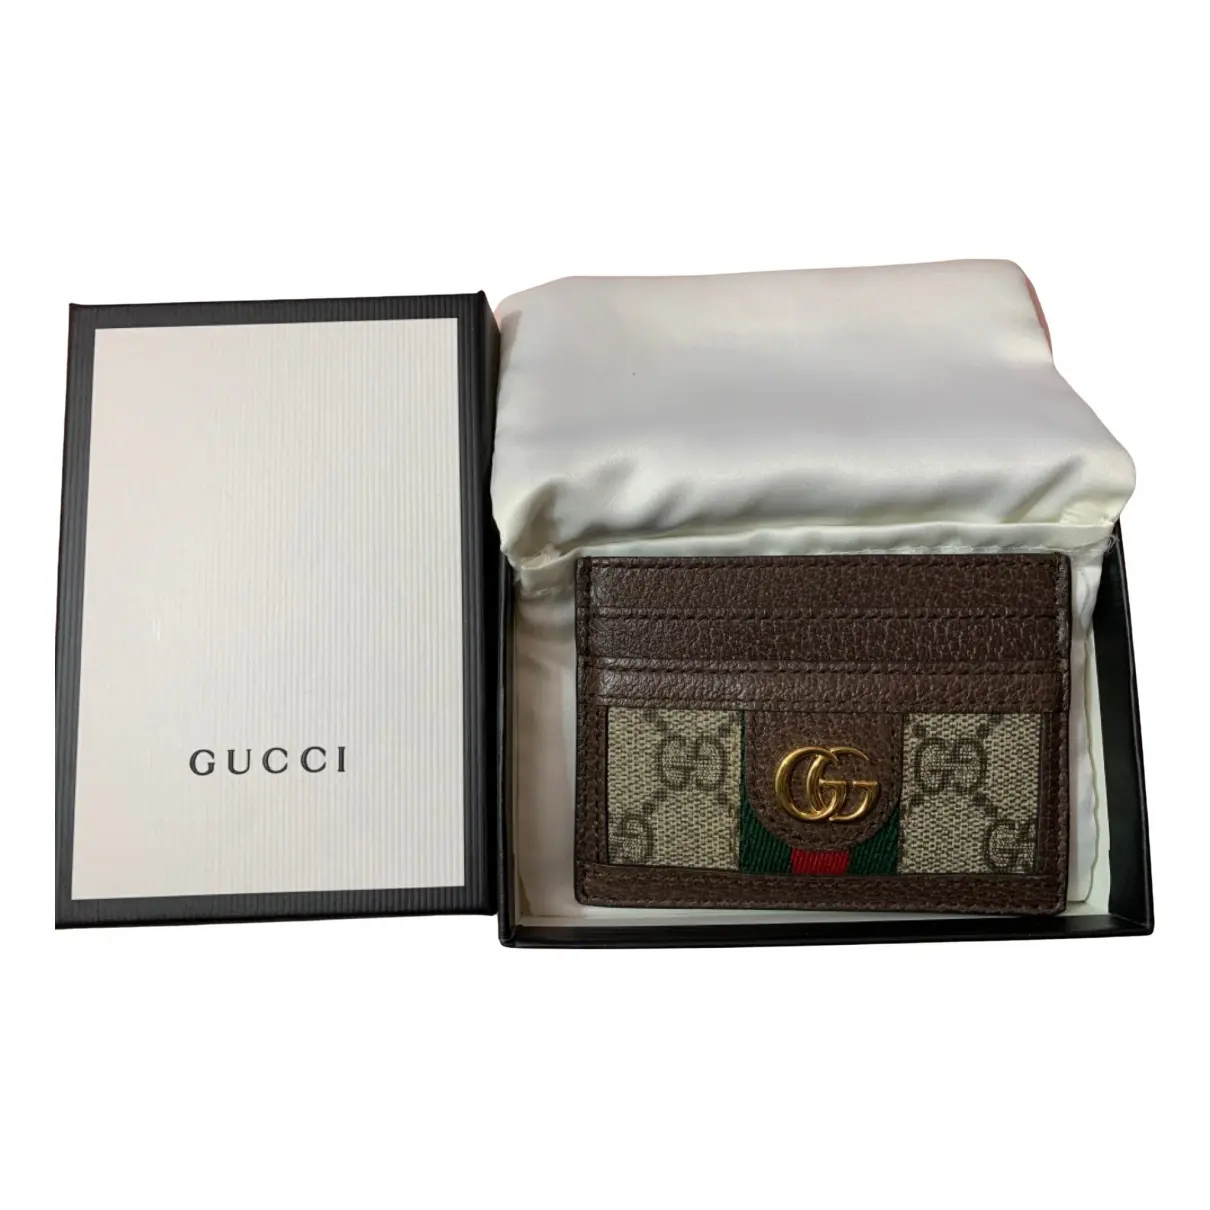 Cloth purse Gucci